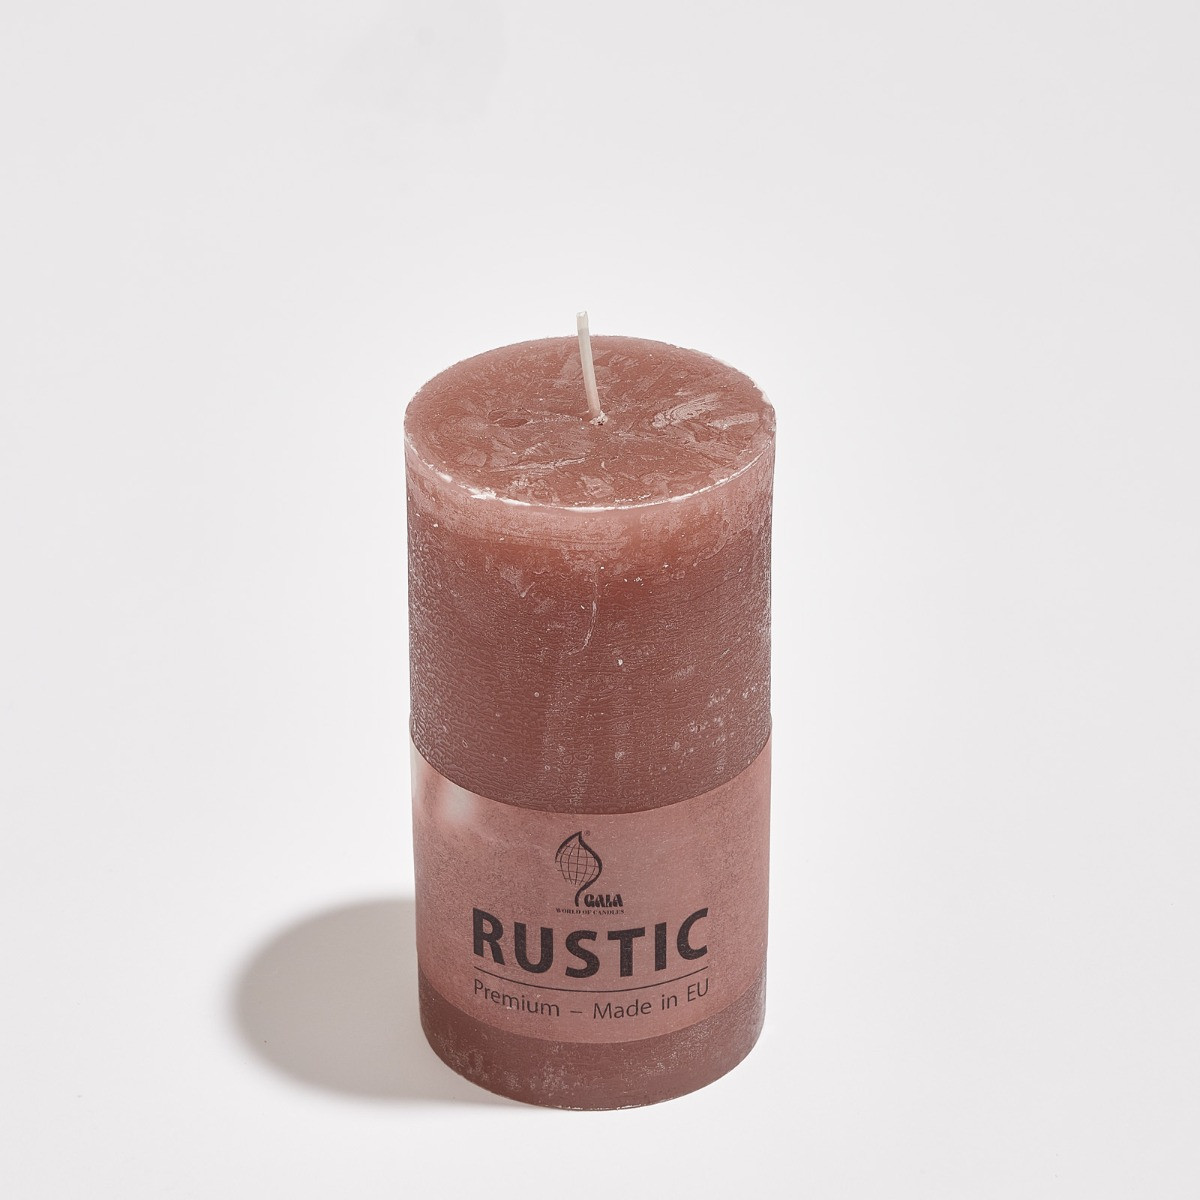 Rustic Pillar Candle - Light Brown>